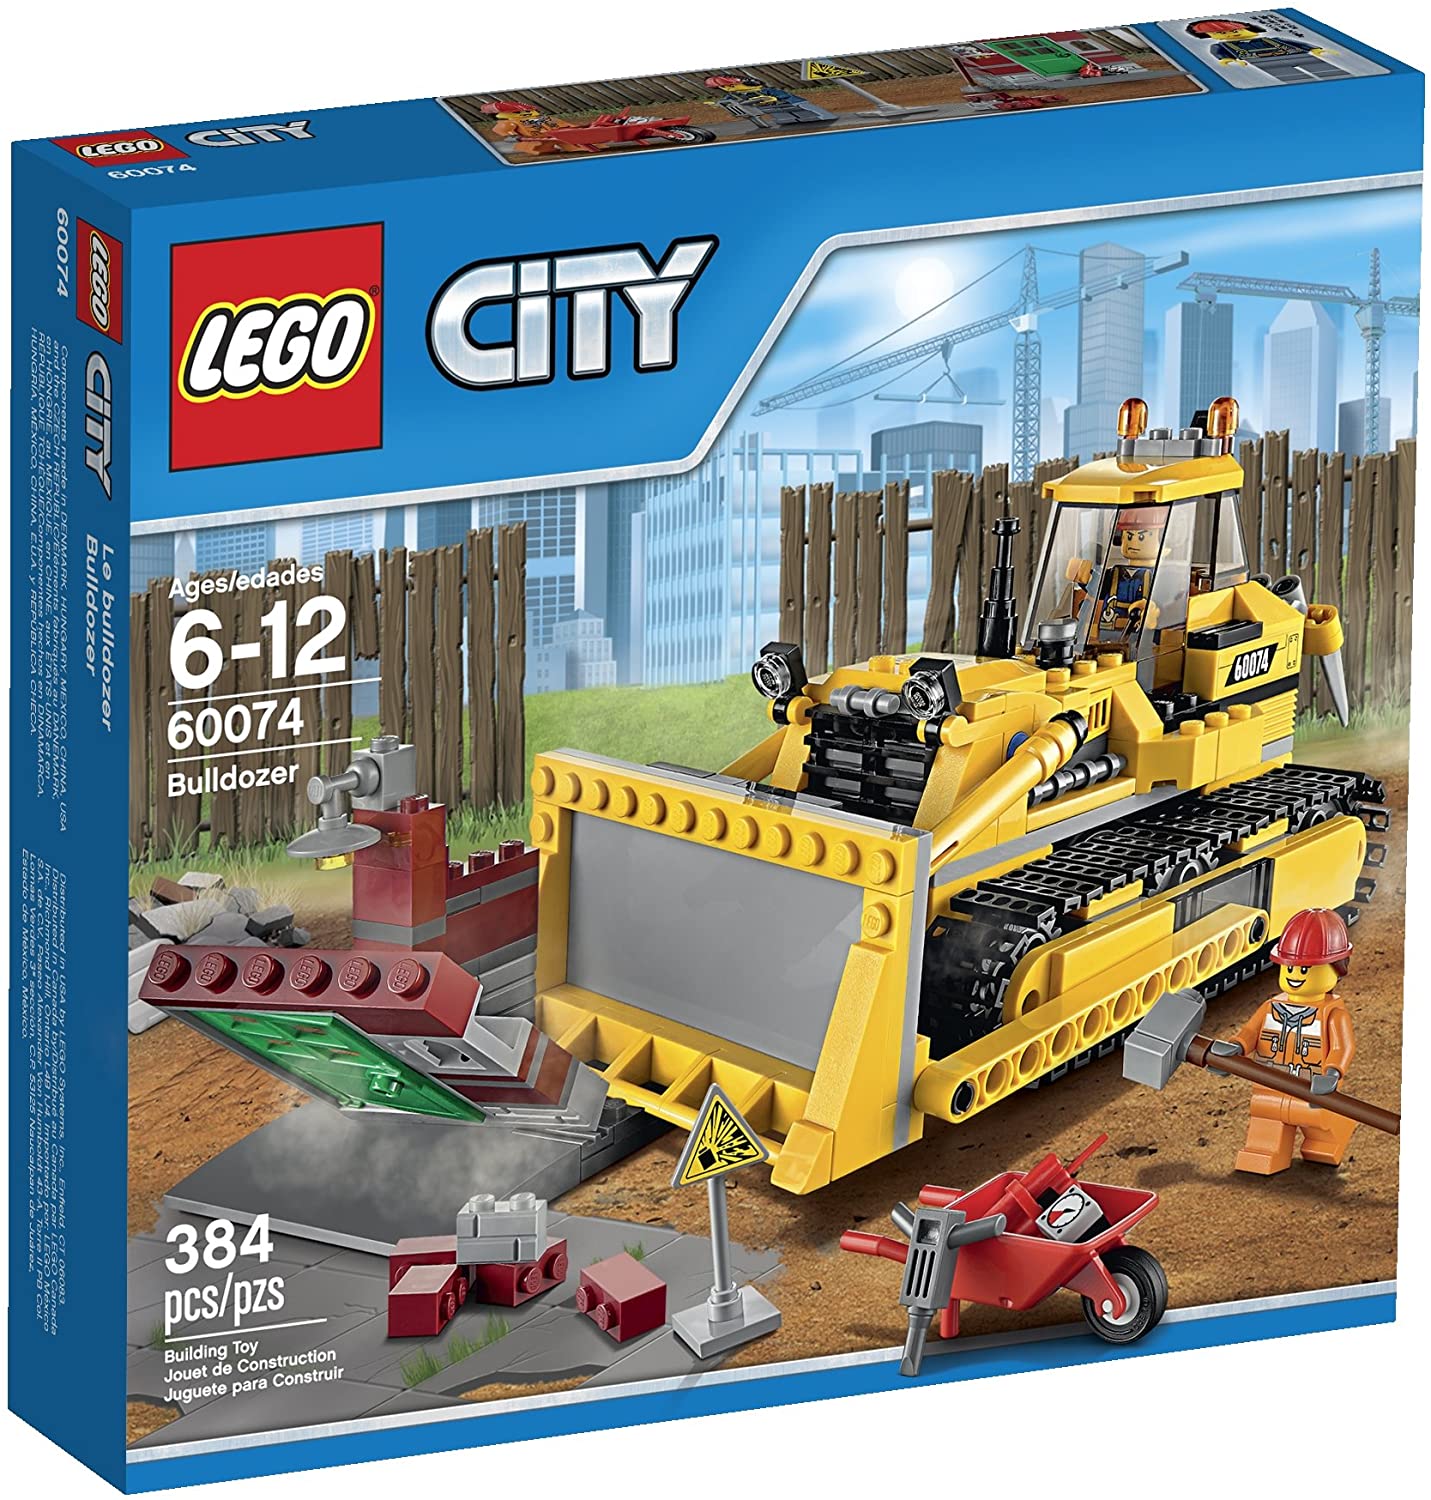 Lego City 60074 Bulldozer 384 Pzs